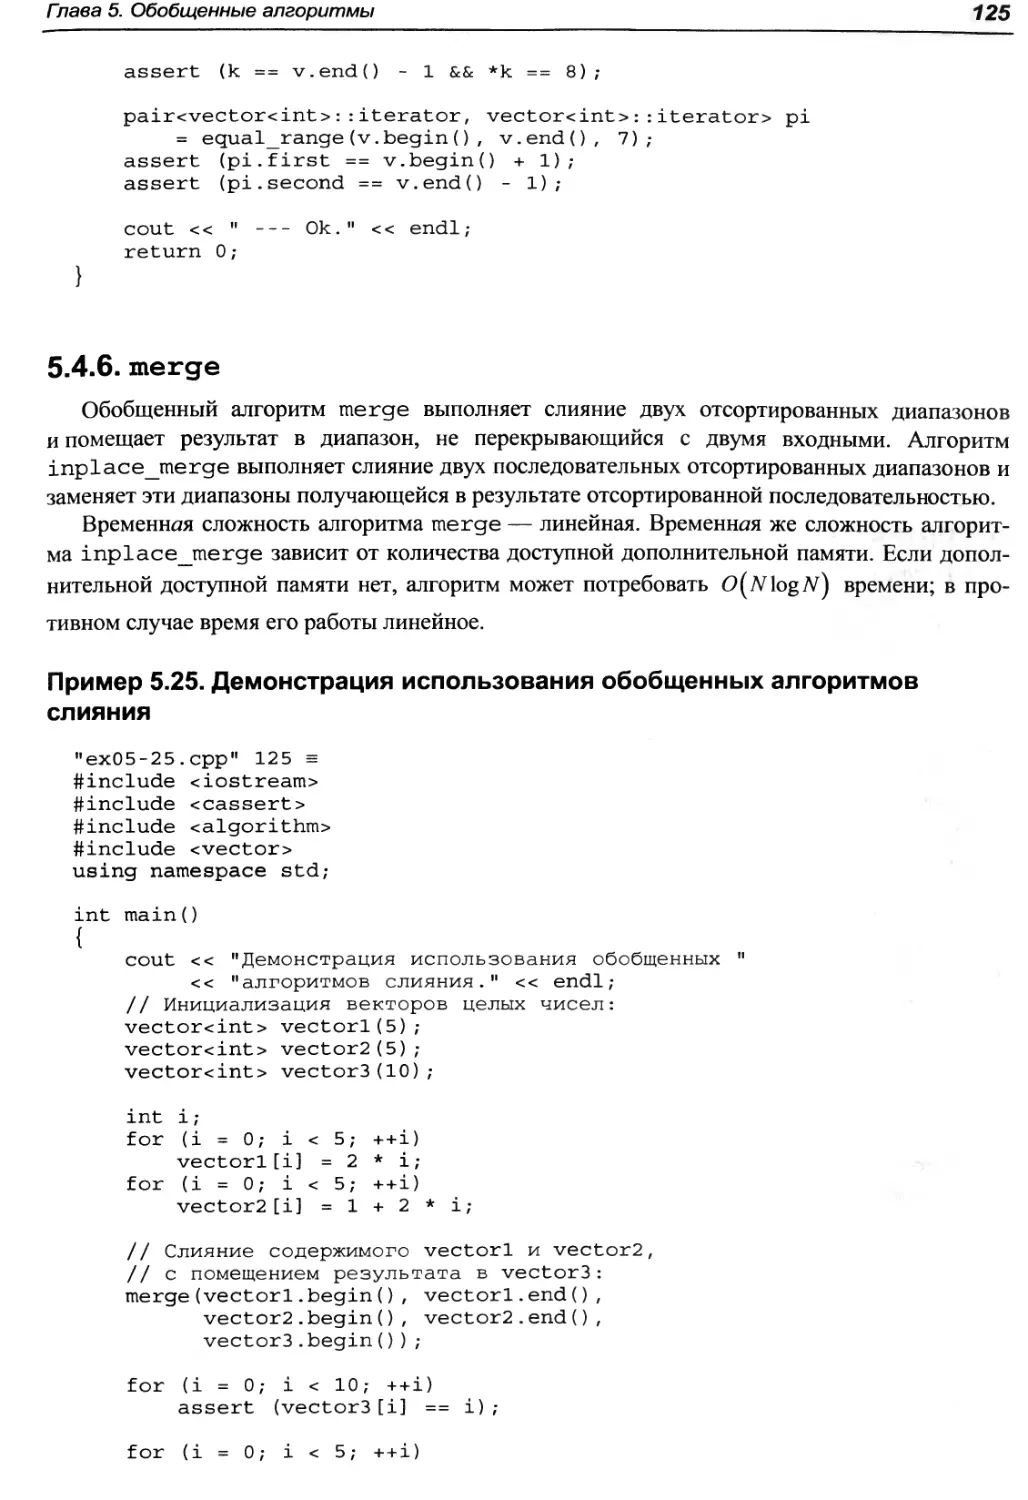 Пример 5.25. Демонстрация использования обобщенных алгоритмов слияния
5.4.6. merge